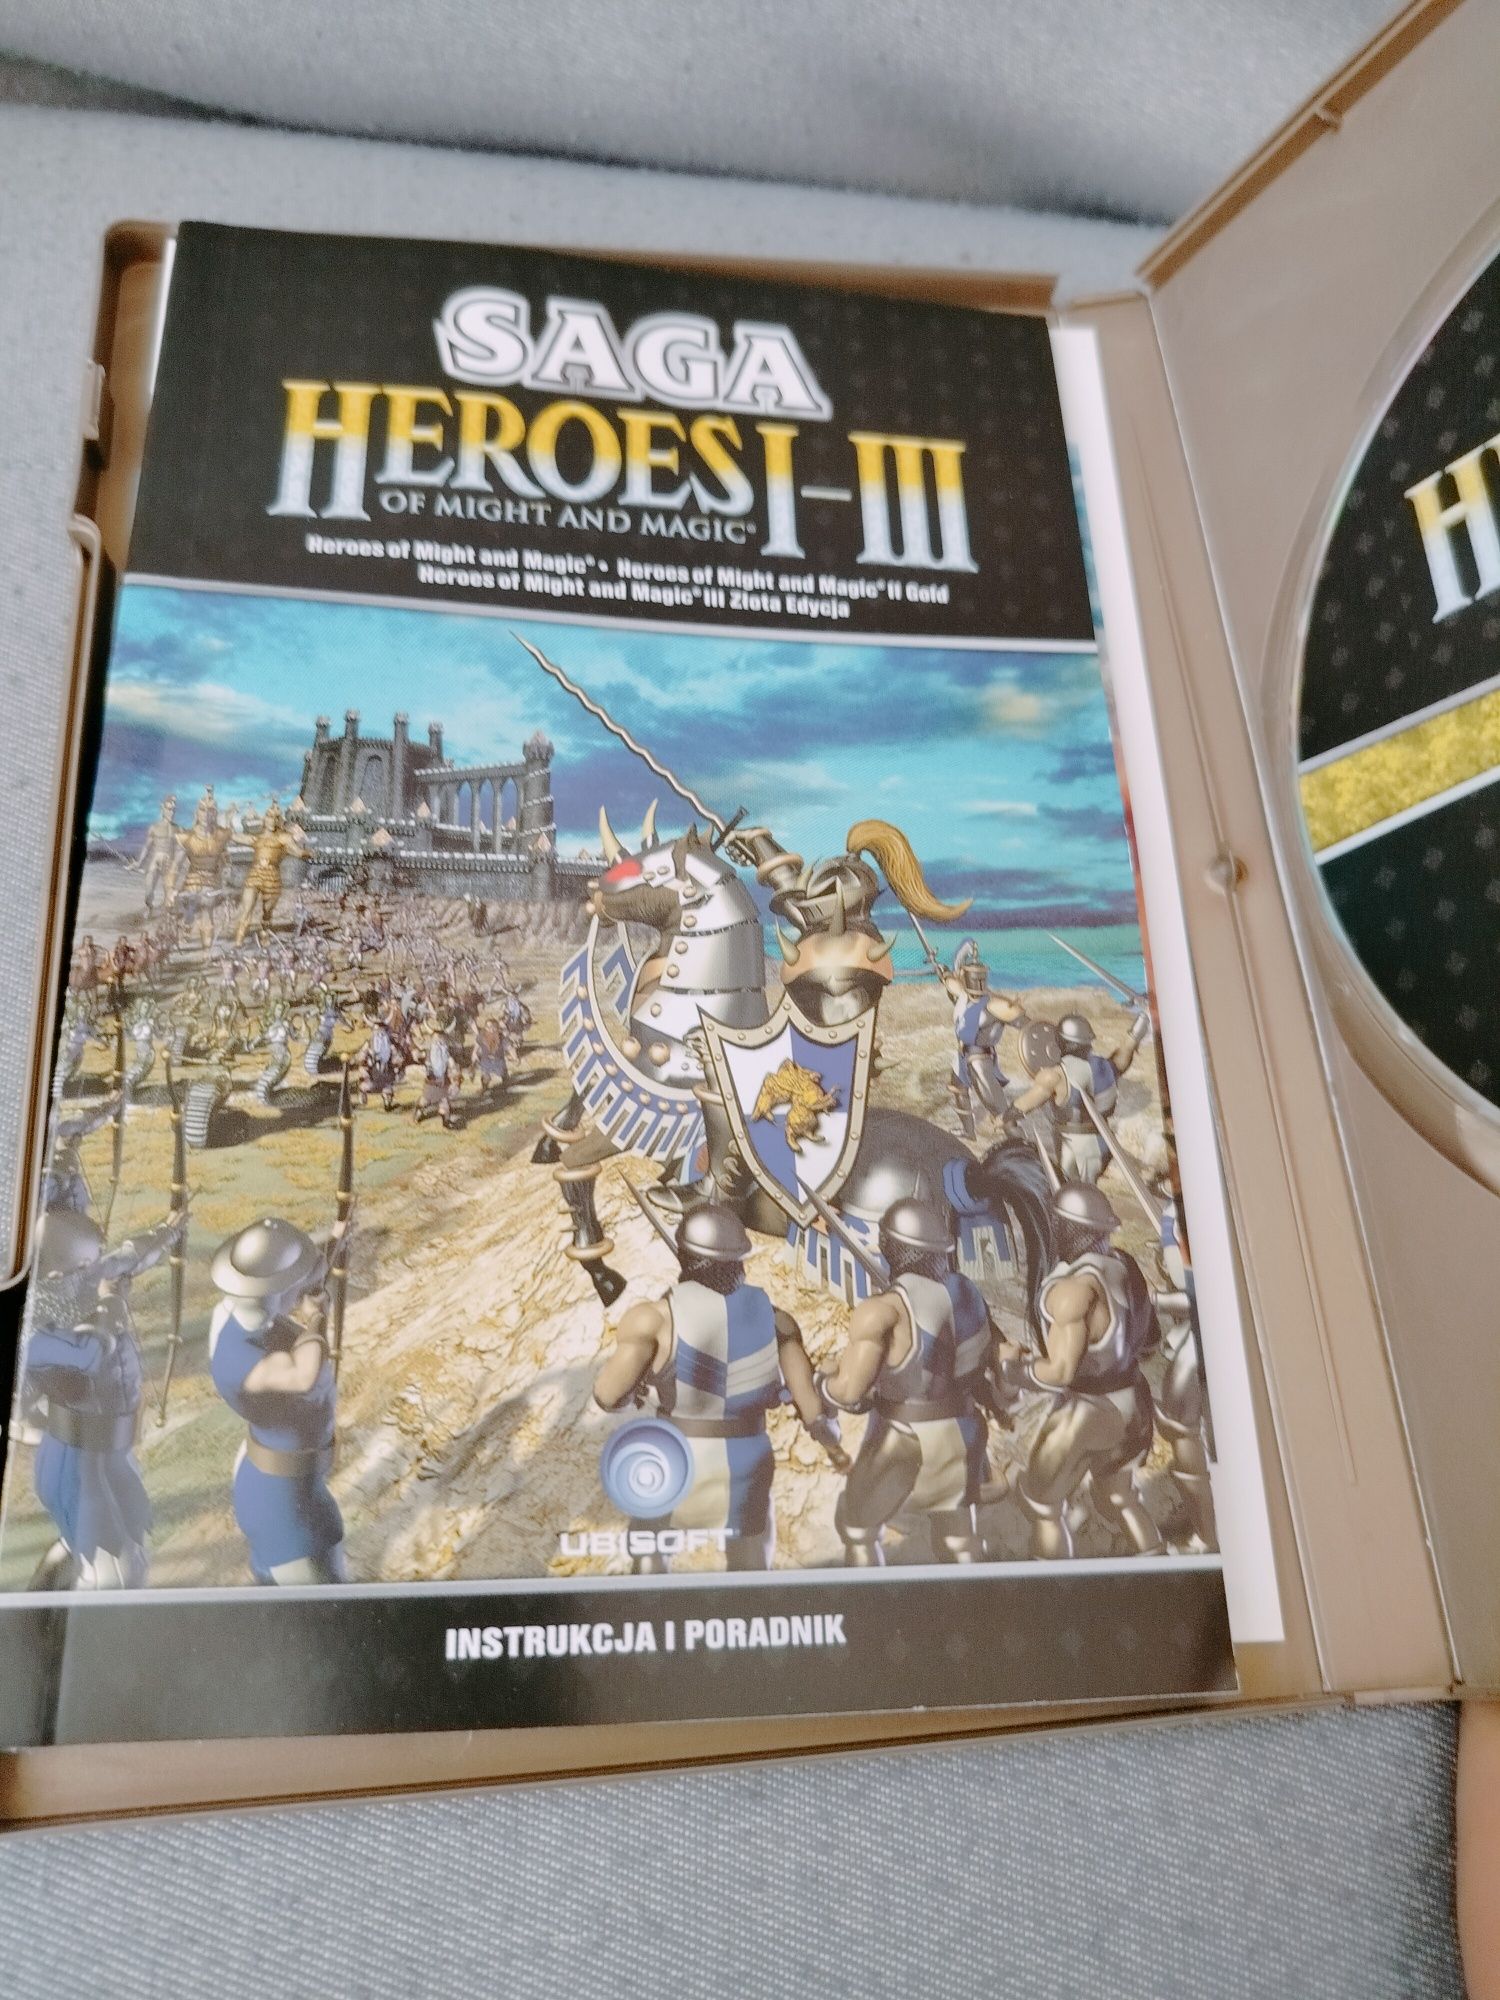 Saga Heroes 1 2 3 I-III Extra klasyka na pc